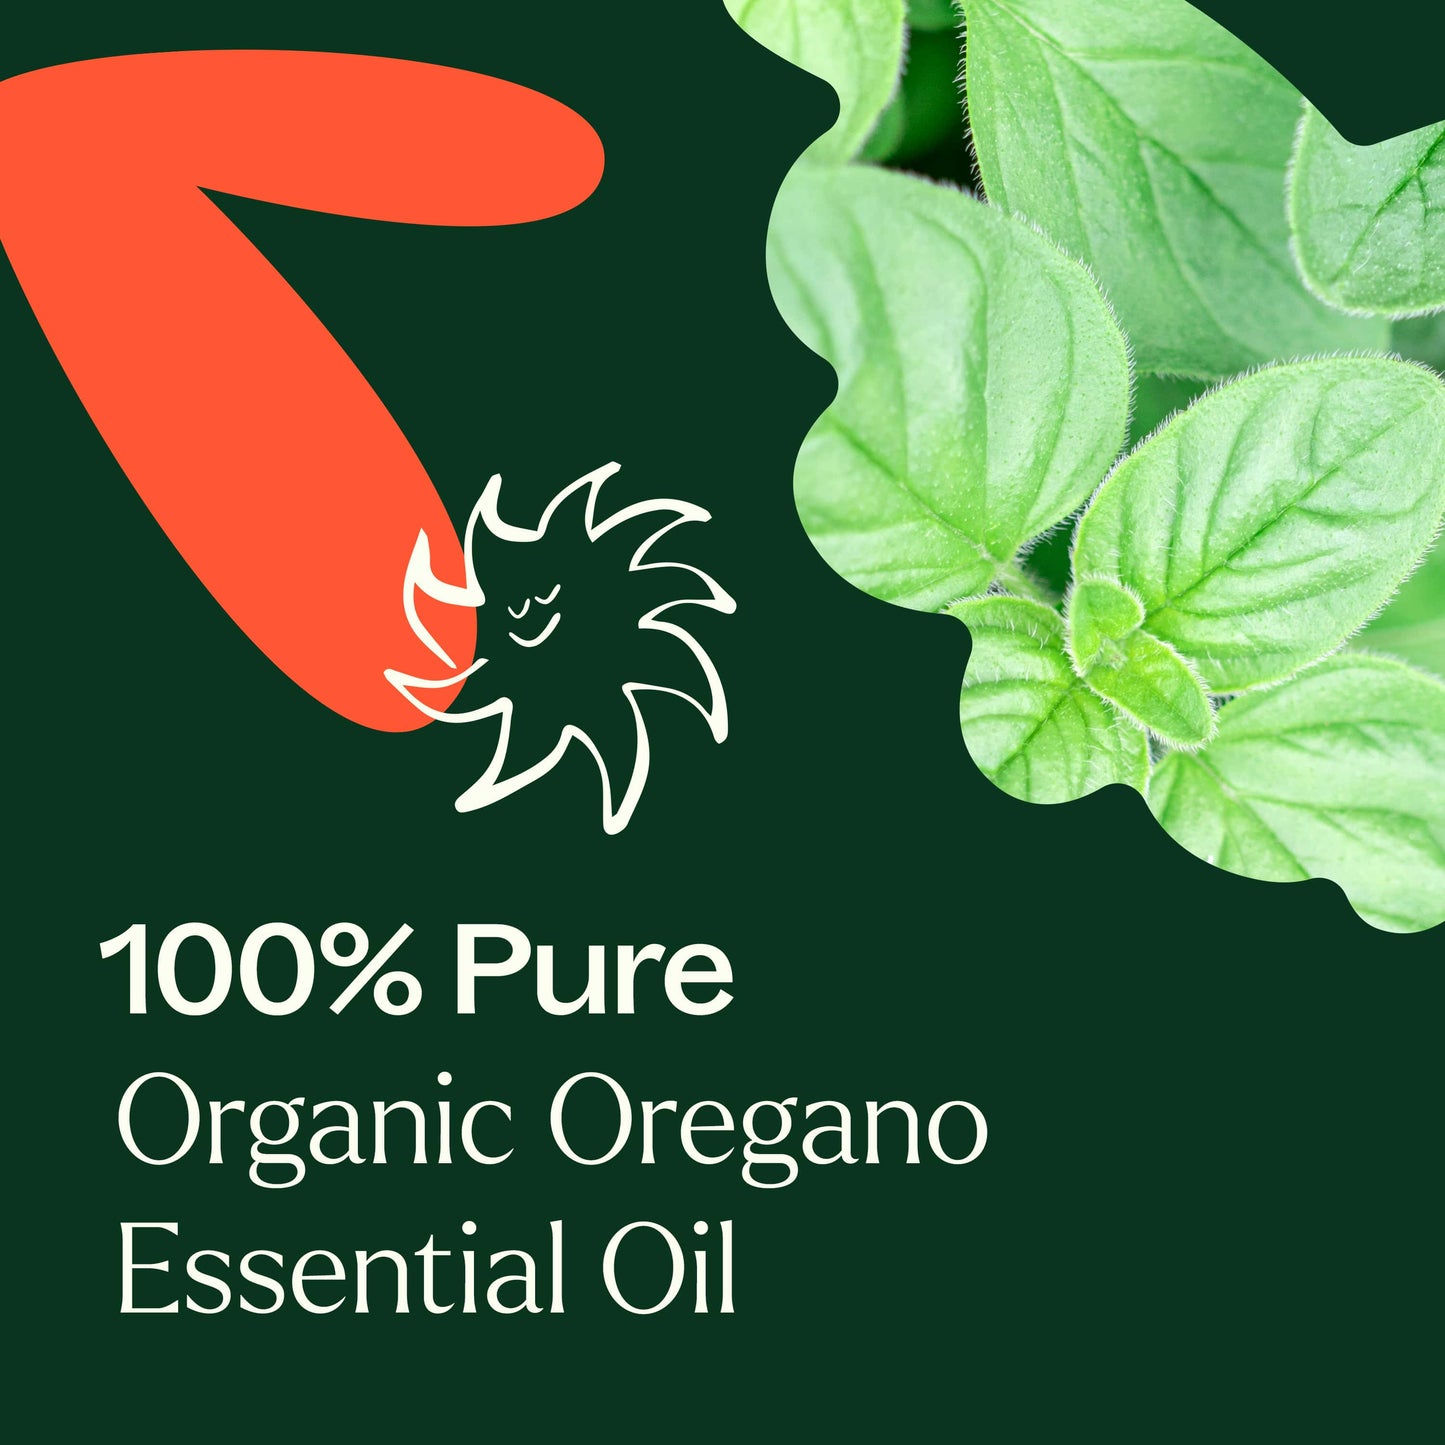 Organic Oregano Essential Oil is 100% pure